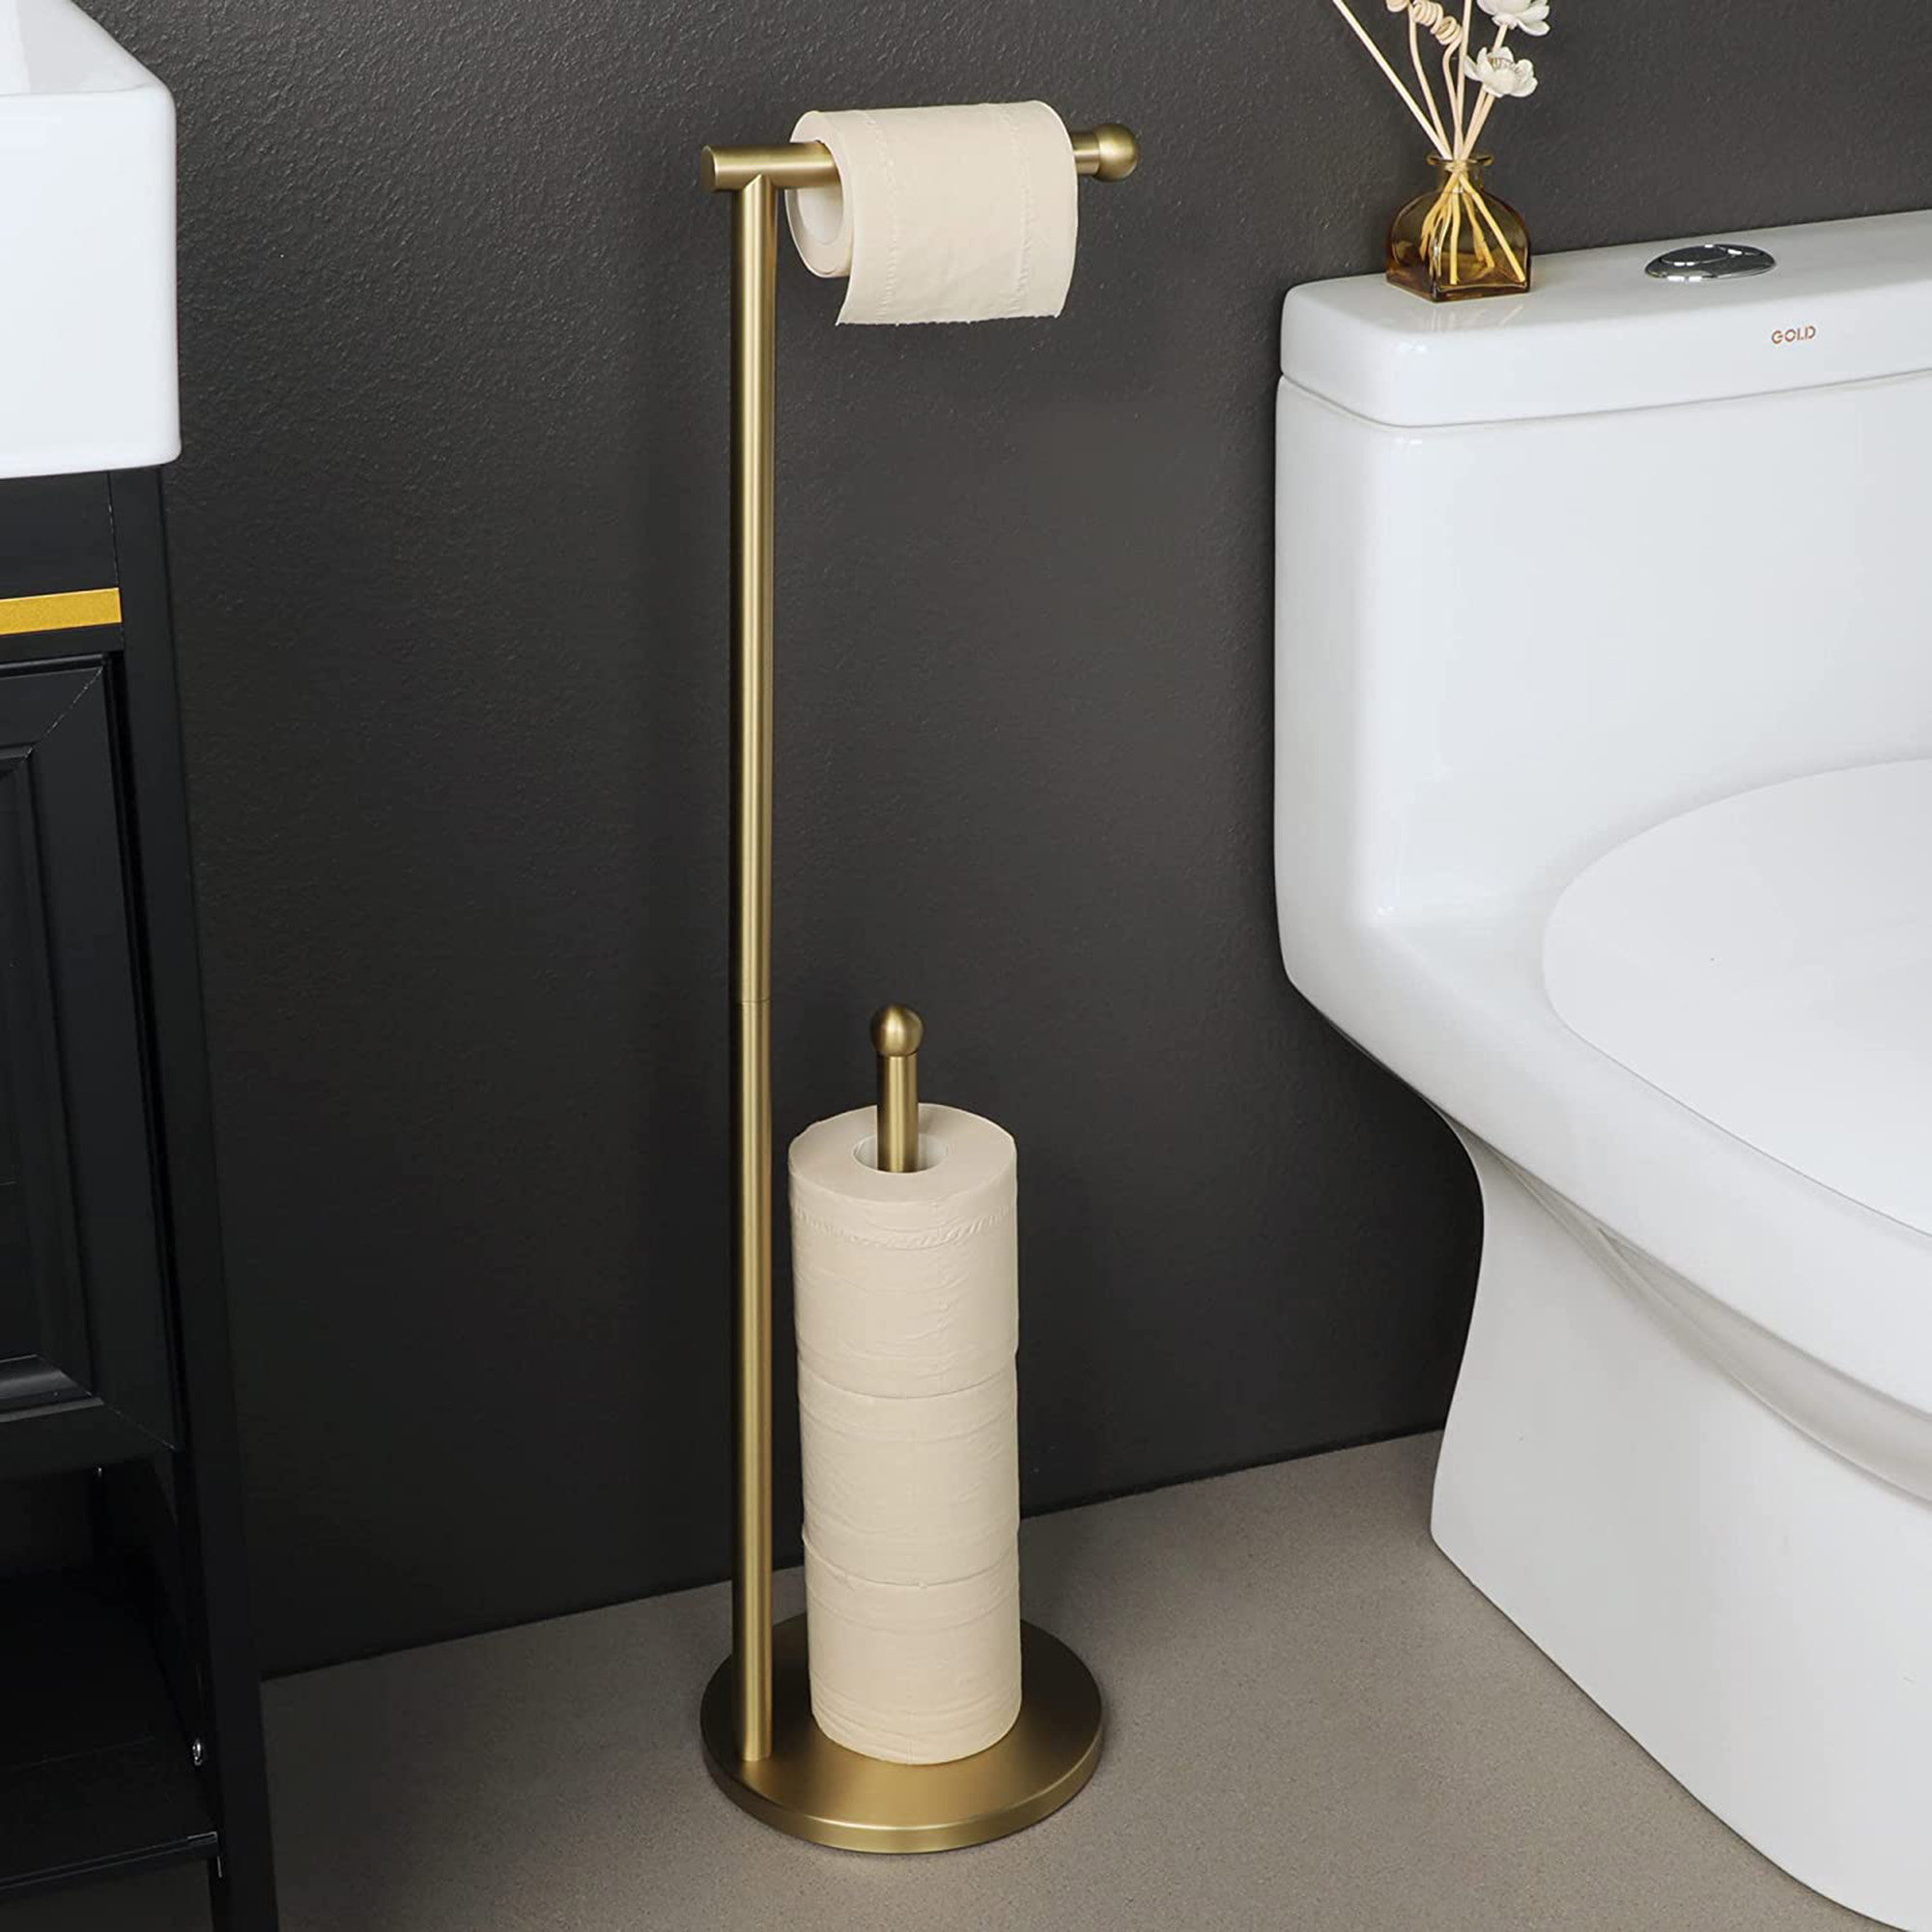 KES Gold Toilet Paper Holder Stand Marble Freestanding Holder